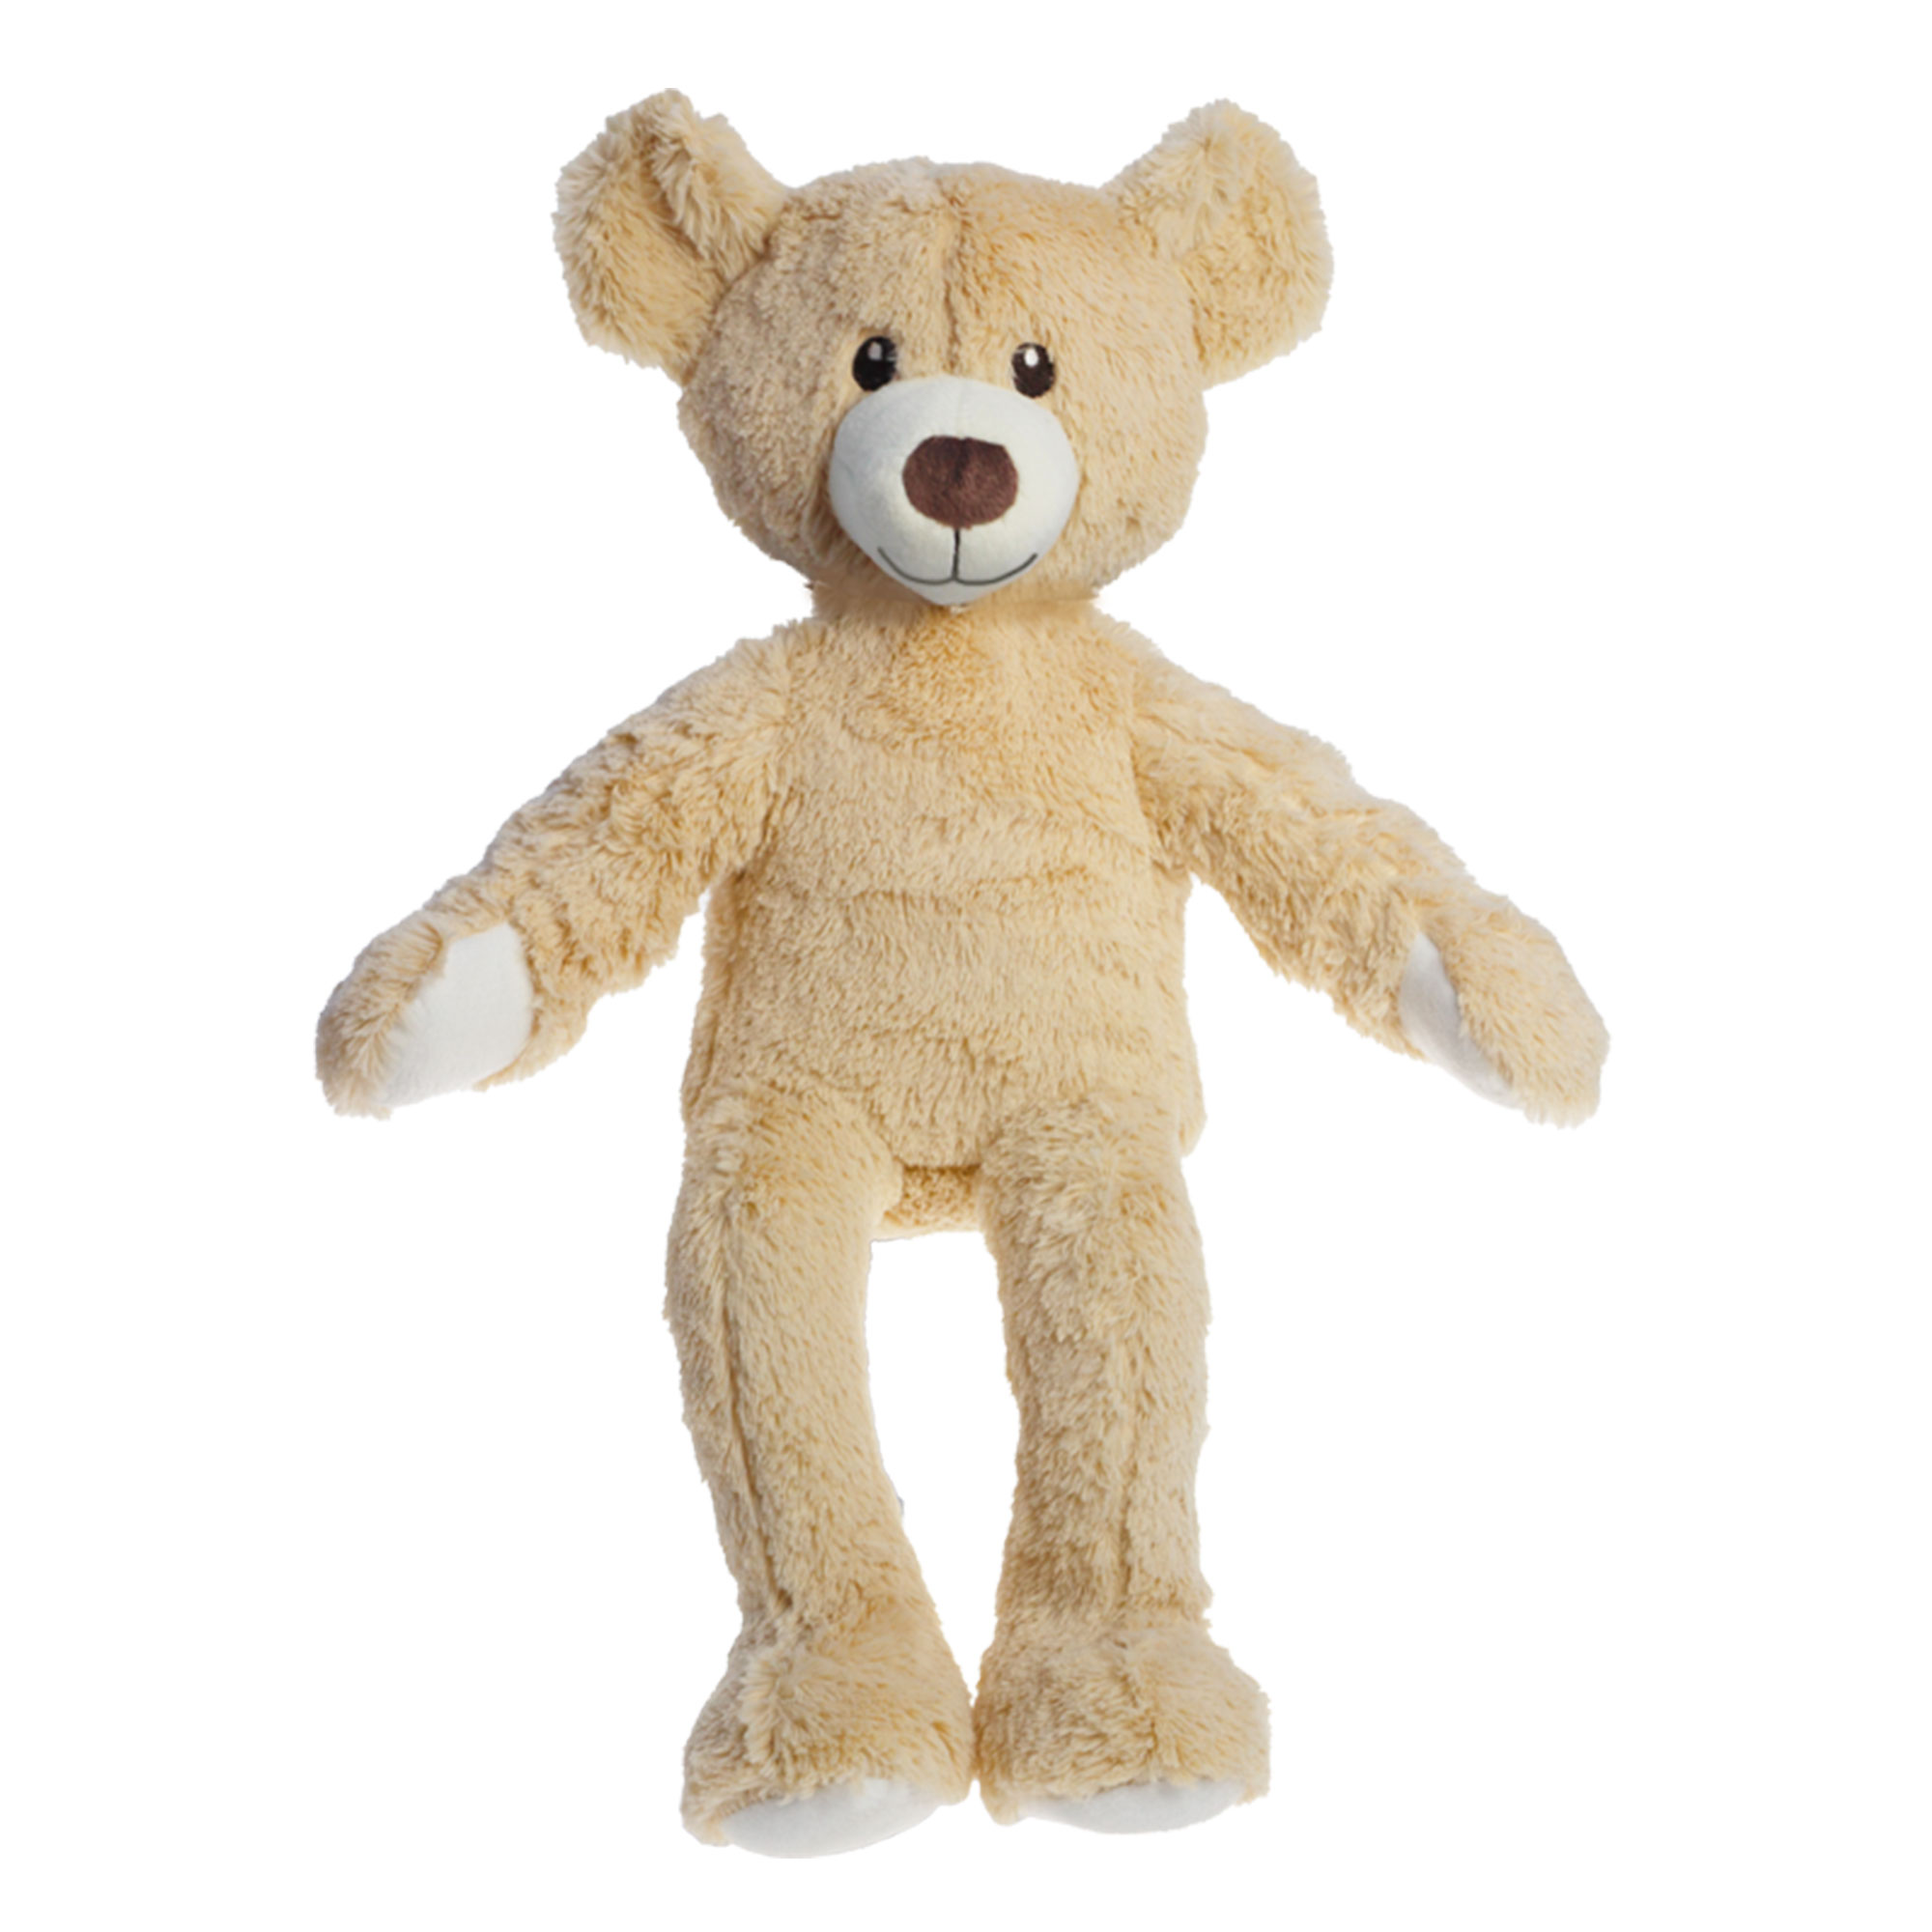 Kuscheltier "Teddy", 42 cm, ohne Bekleidung